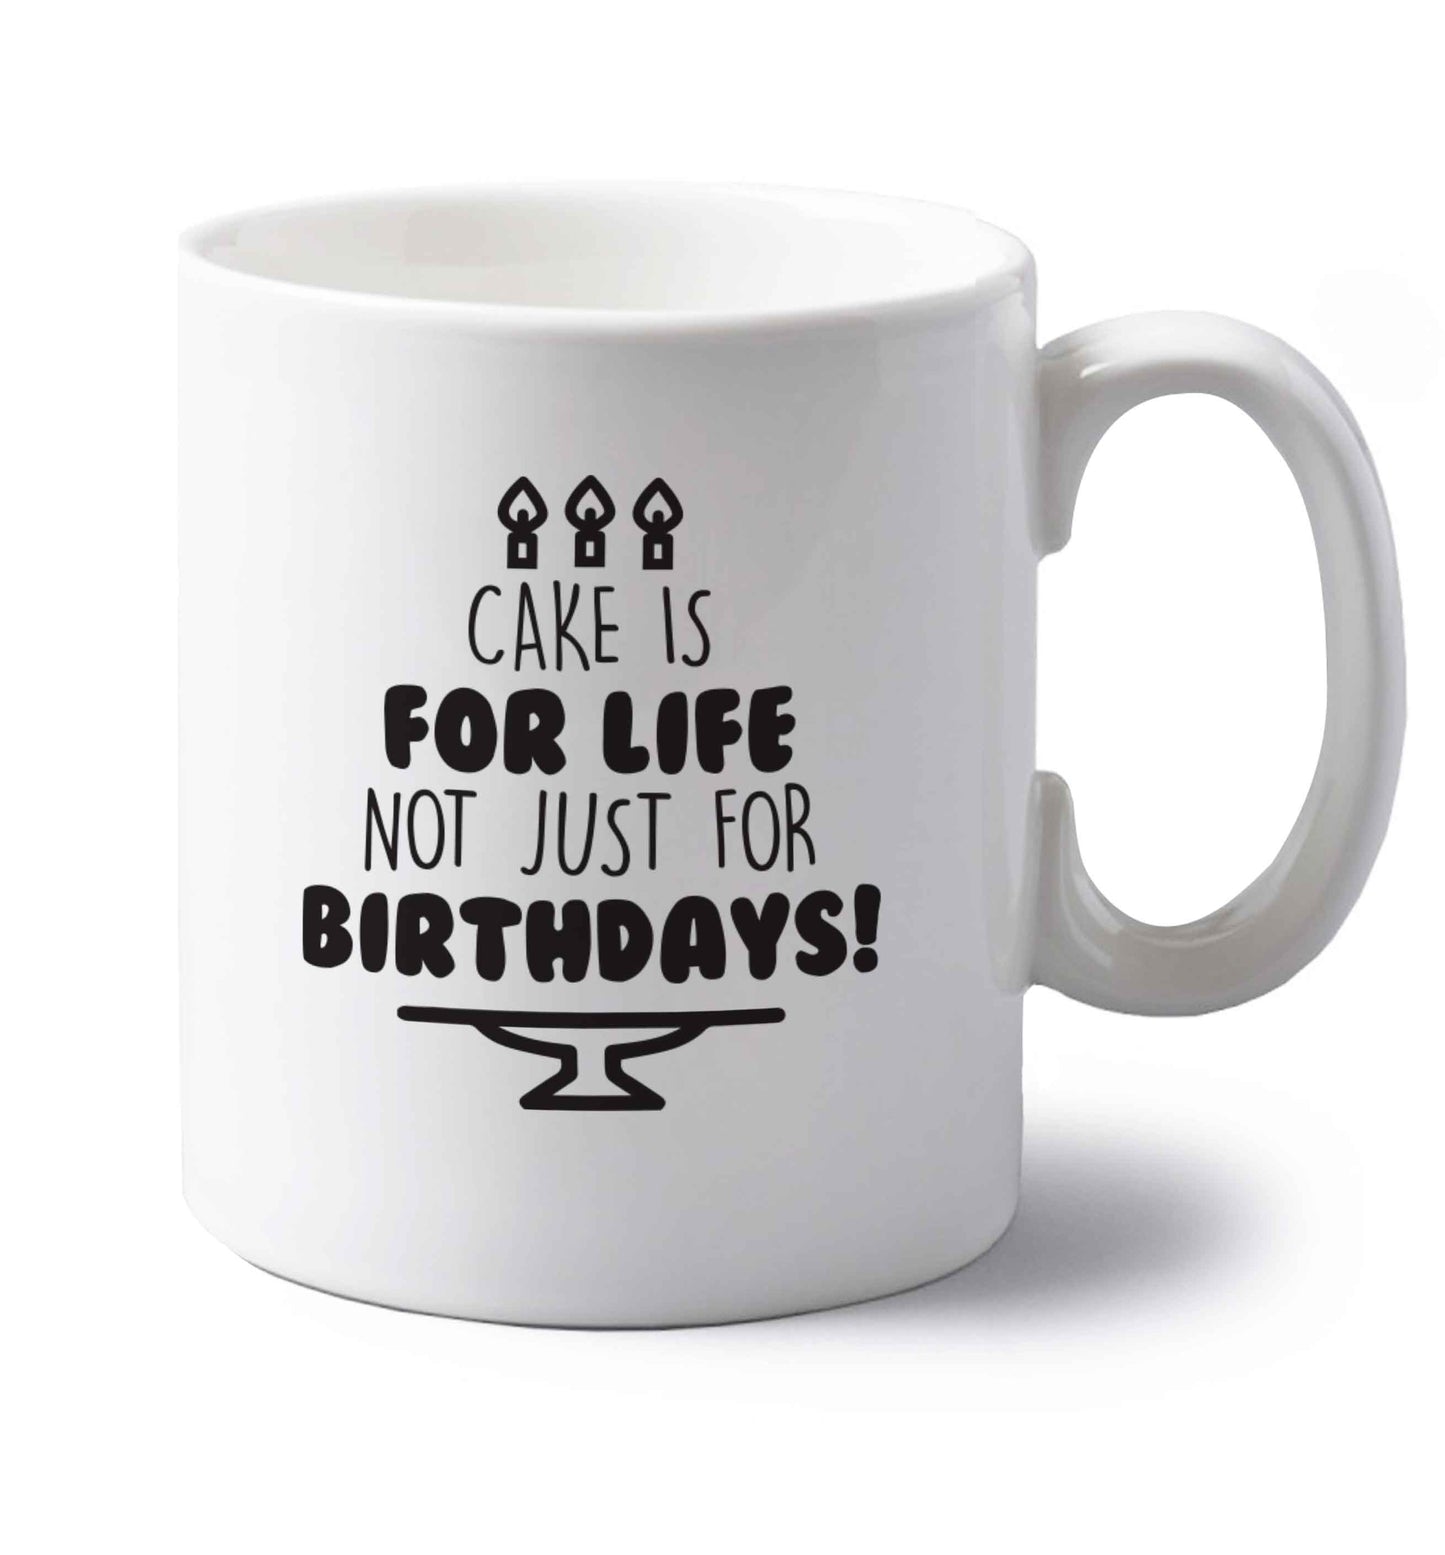 Cake is for life not just for birthdays left handed white ceramic mug 